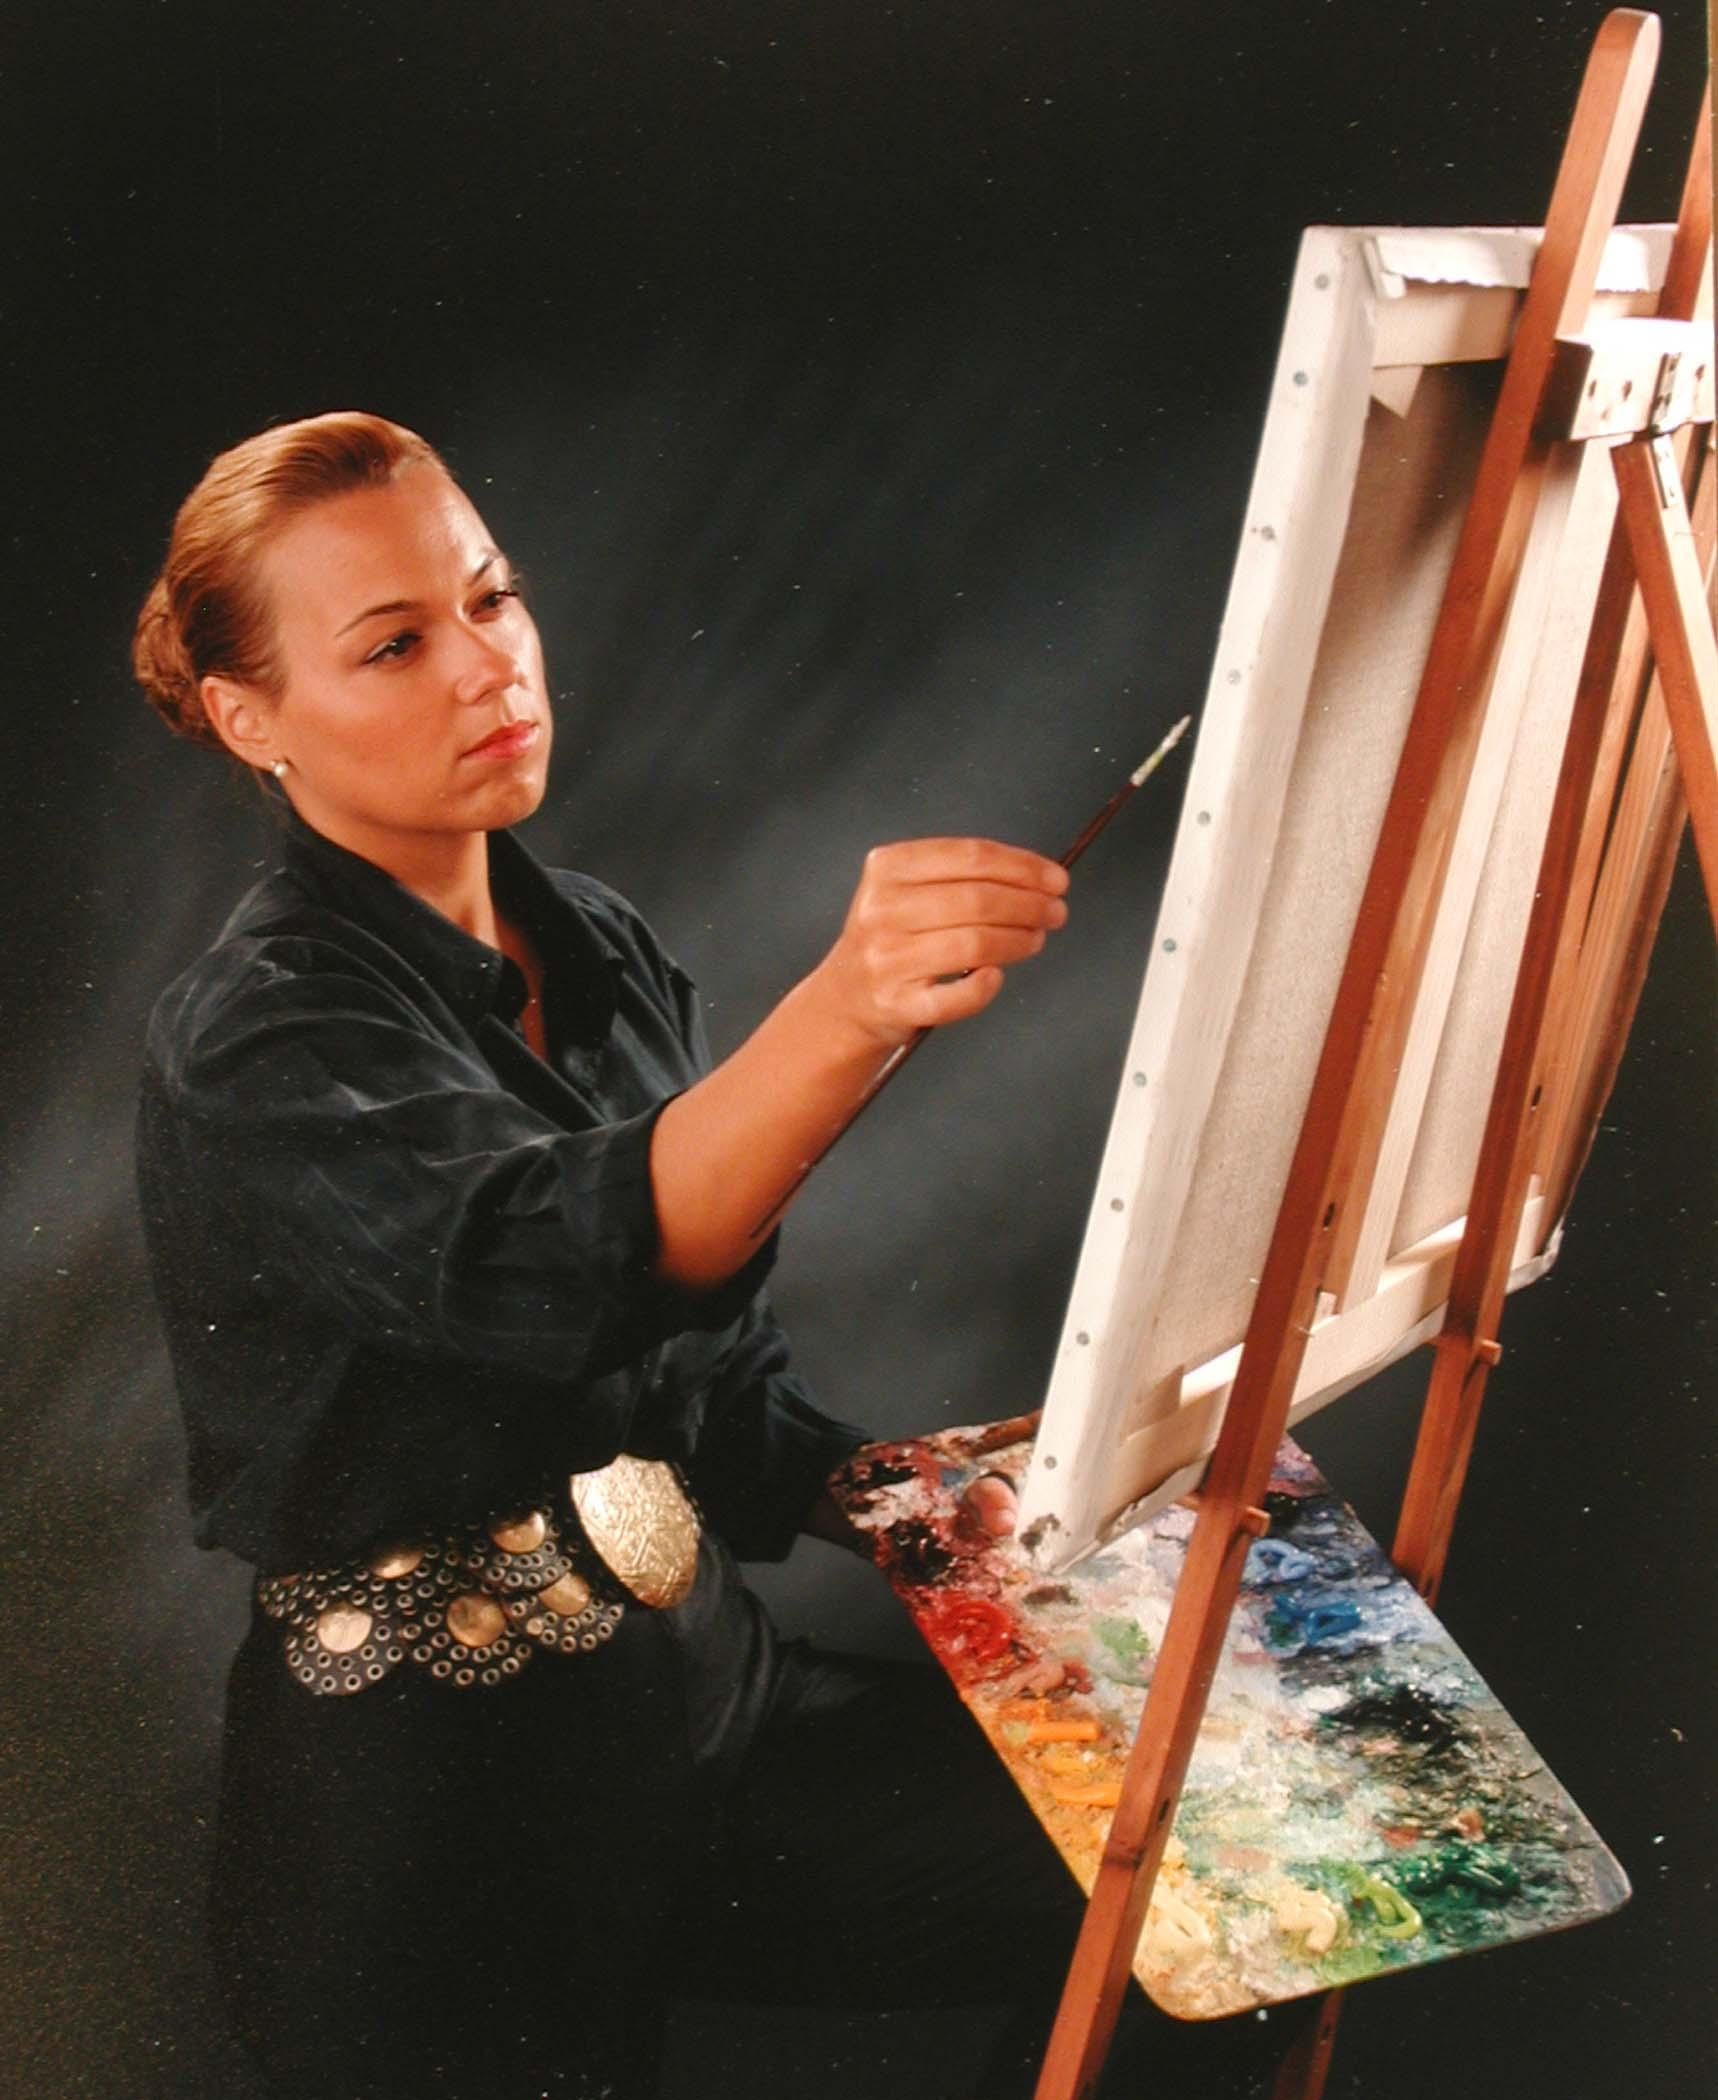 Ich werde alles mit dir versuchen von Lélia Pissarro (geb. 1963)
Acryl, Pigment und Goldpulver auf Leinwand
81 x 65 cm (31 ⁷/₈ x 25 ⁵/₈ Zoll)
Rückseitig signiert und betitelt

Dieses Werk wird von einem Echtheitszertifikat des Künstlers begleitet.